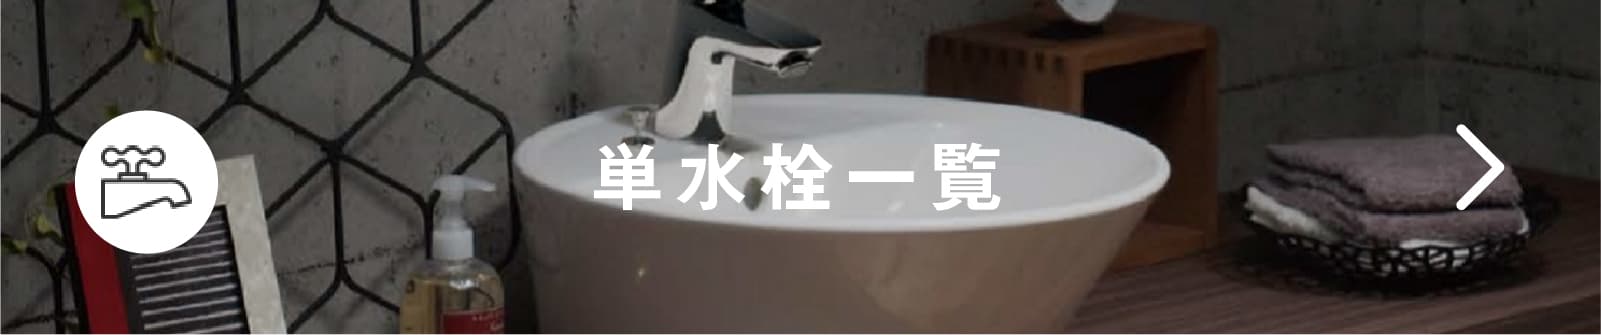 手洗ボウル 置き型 クレールガラス [φ270]｜洗面・手洗い｜単水栓 